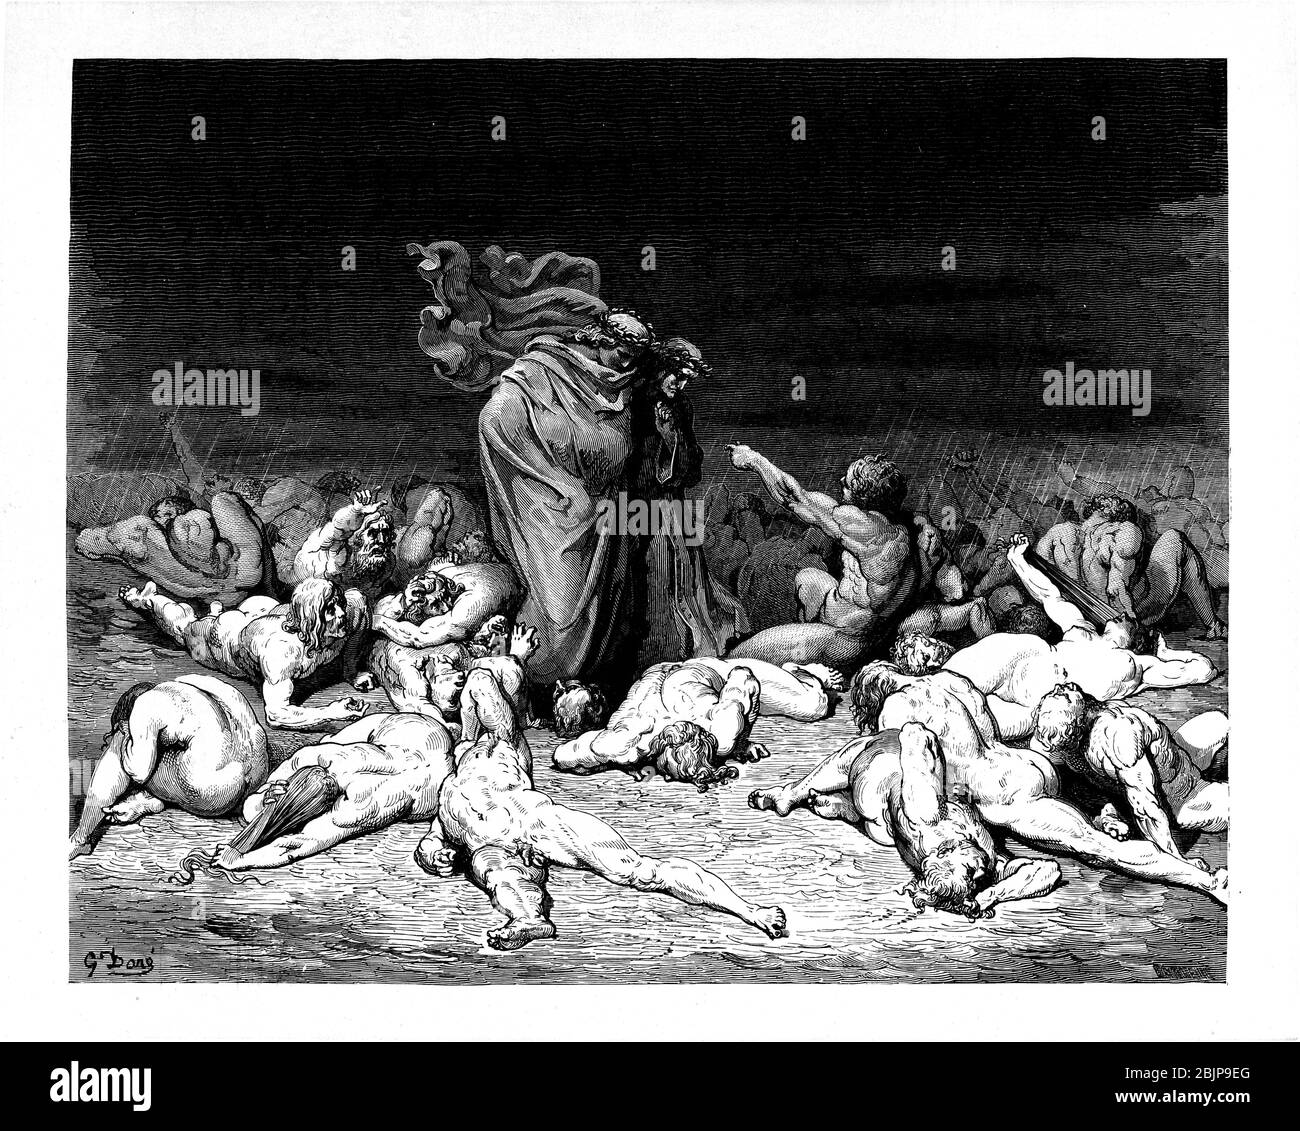 De la Divine Comédie par le poète italien du XIVe siècle Dante Alighieri. 1860 œuvres d'art, de l'artiste français Gustave Dore et gravées par Stéphane Pannemaker, de 'la Vision de l'Enfer' (1868), traduction anglaise de Cary de l'Inferno. Dante a écrit son poème épique "Divina Commedia" (la Divine Comedy) entre 1308 et sa mort en 1321. Composé de 14 233 lignes, et divisé en trois parties (Inferno, Purgatorio et Paradiso), il est considéré comme la plus grande œuvre littéraire en langue italienne et un chef-d'œuvre mondial. Il s'agit d'une étude complète de la théologie, de la littérature et de la pensée médiévales. Le nouveau non Banque D'Images